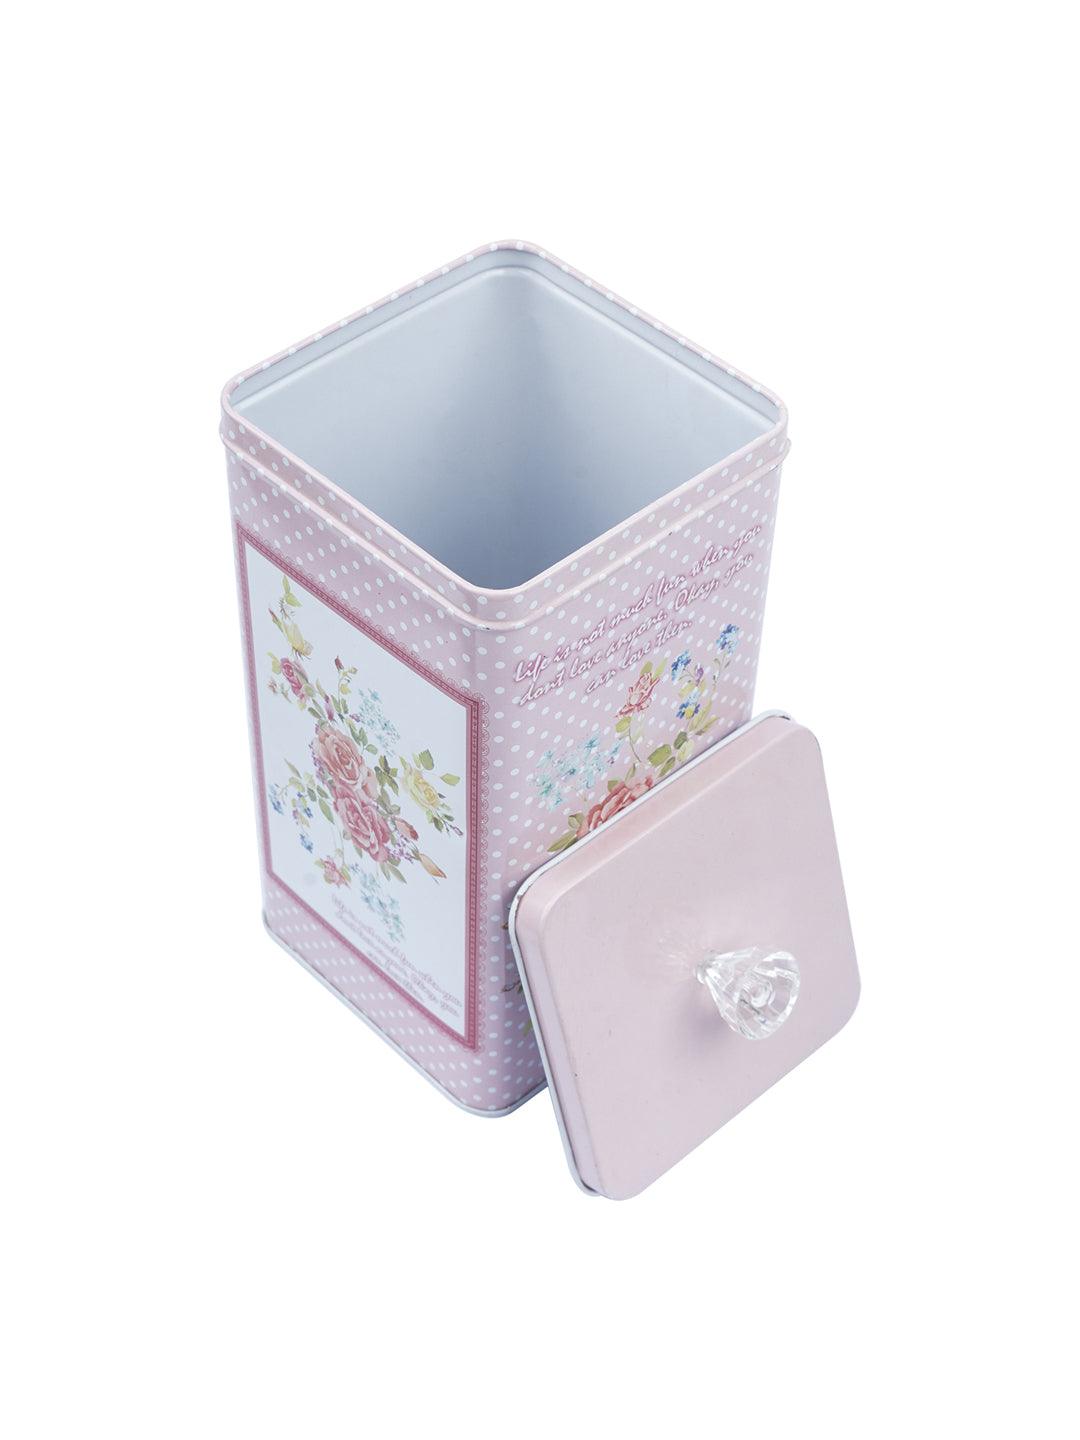 Floral Design Kitchen Tin Boxes - Assorted Colour - MARKET 99